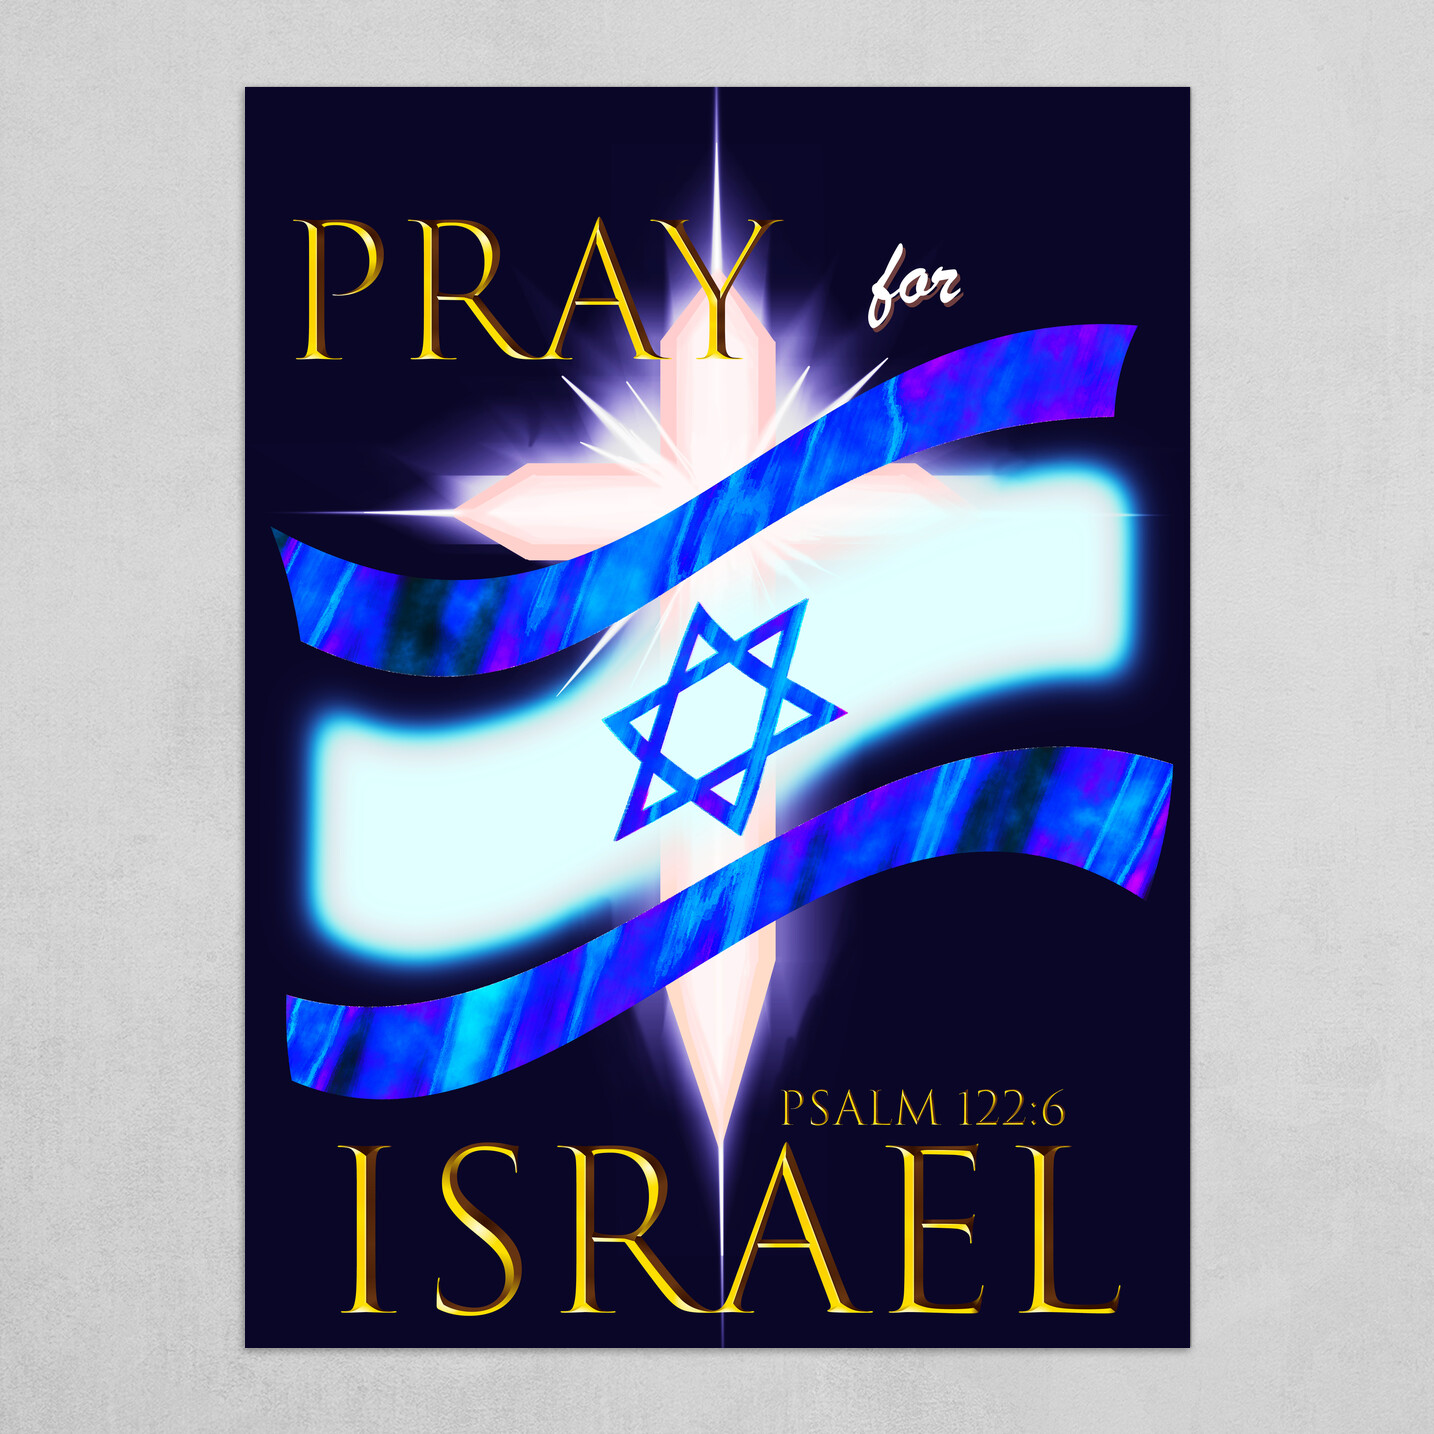 Pray for Israel - Midnight